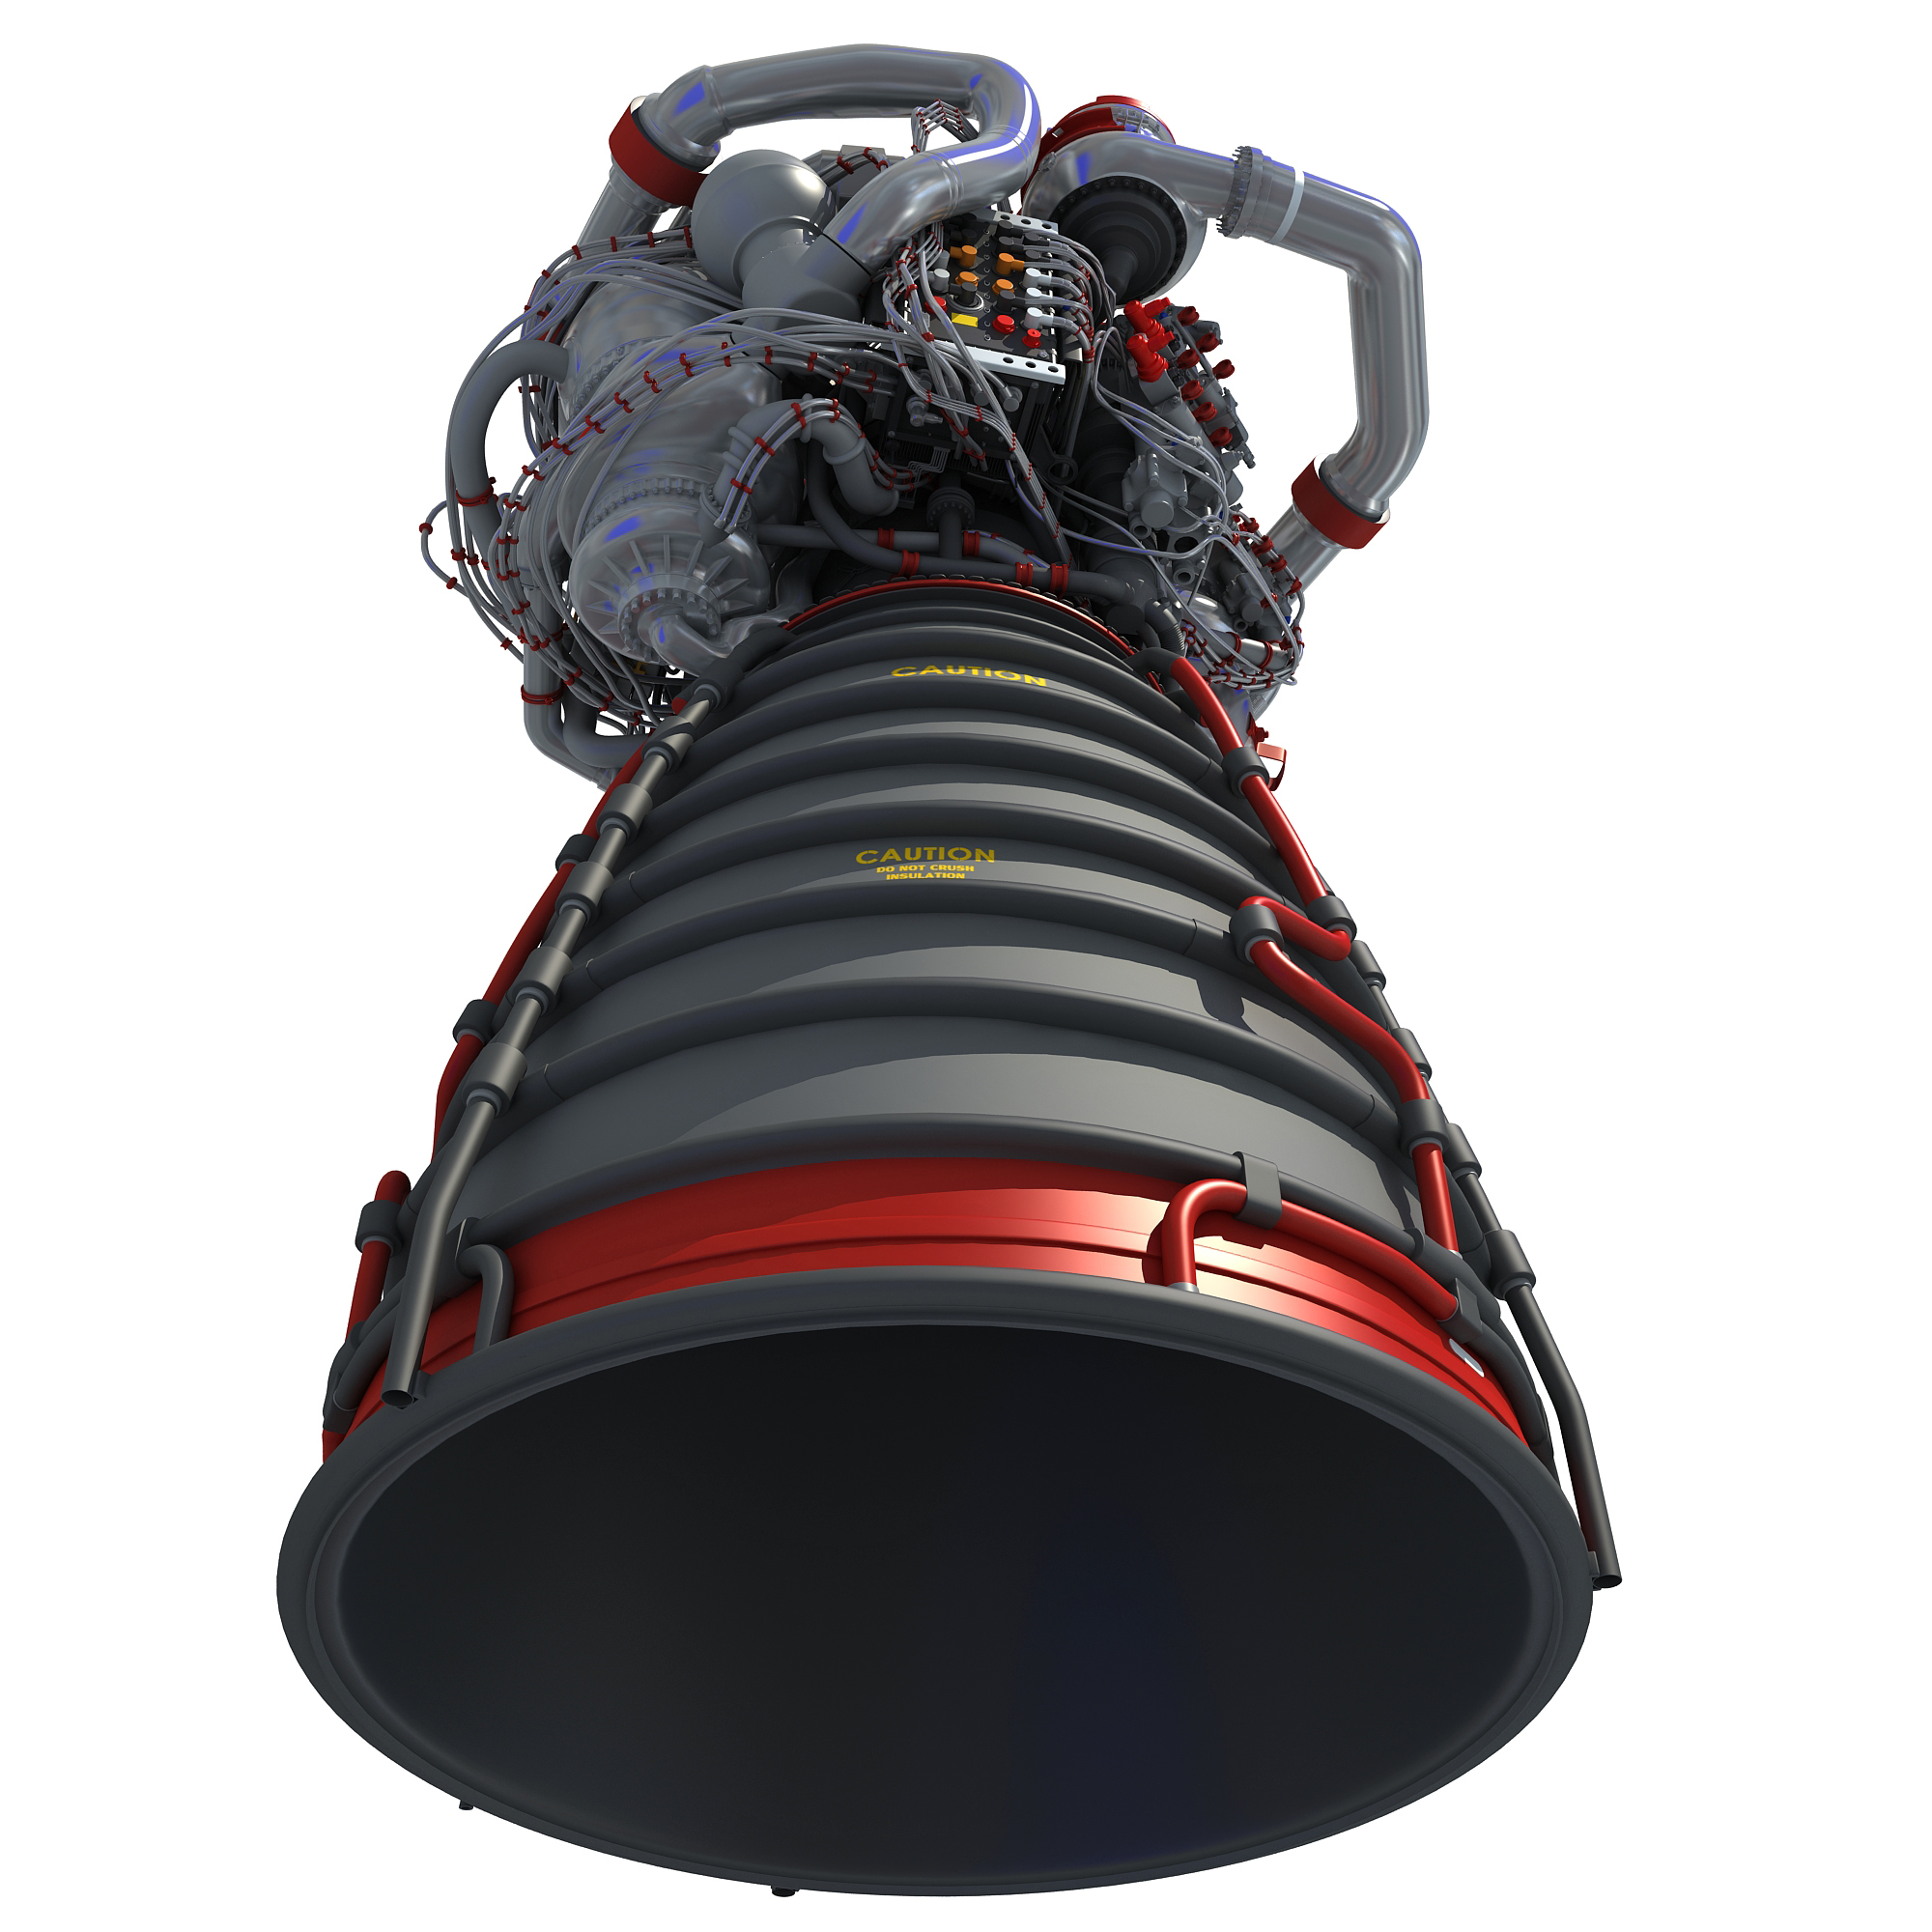 火箭发动机燃气发生器图片